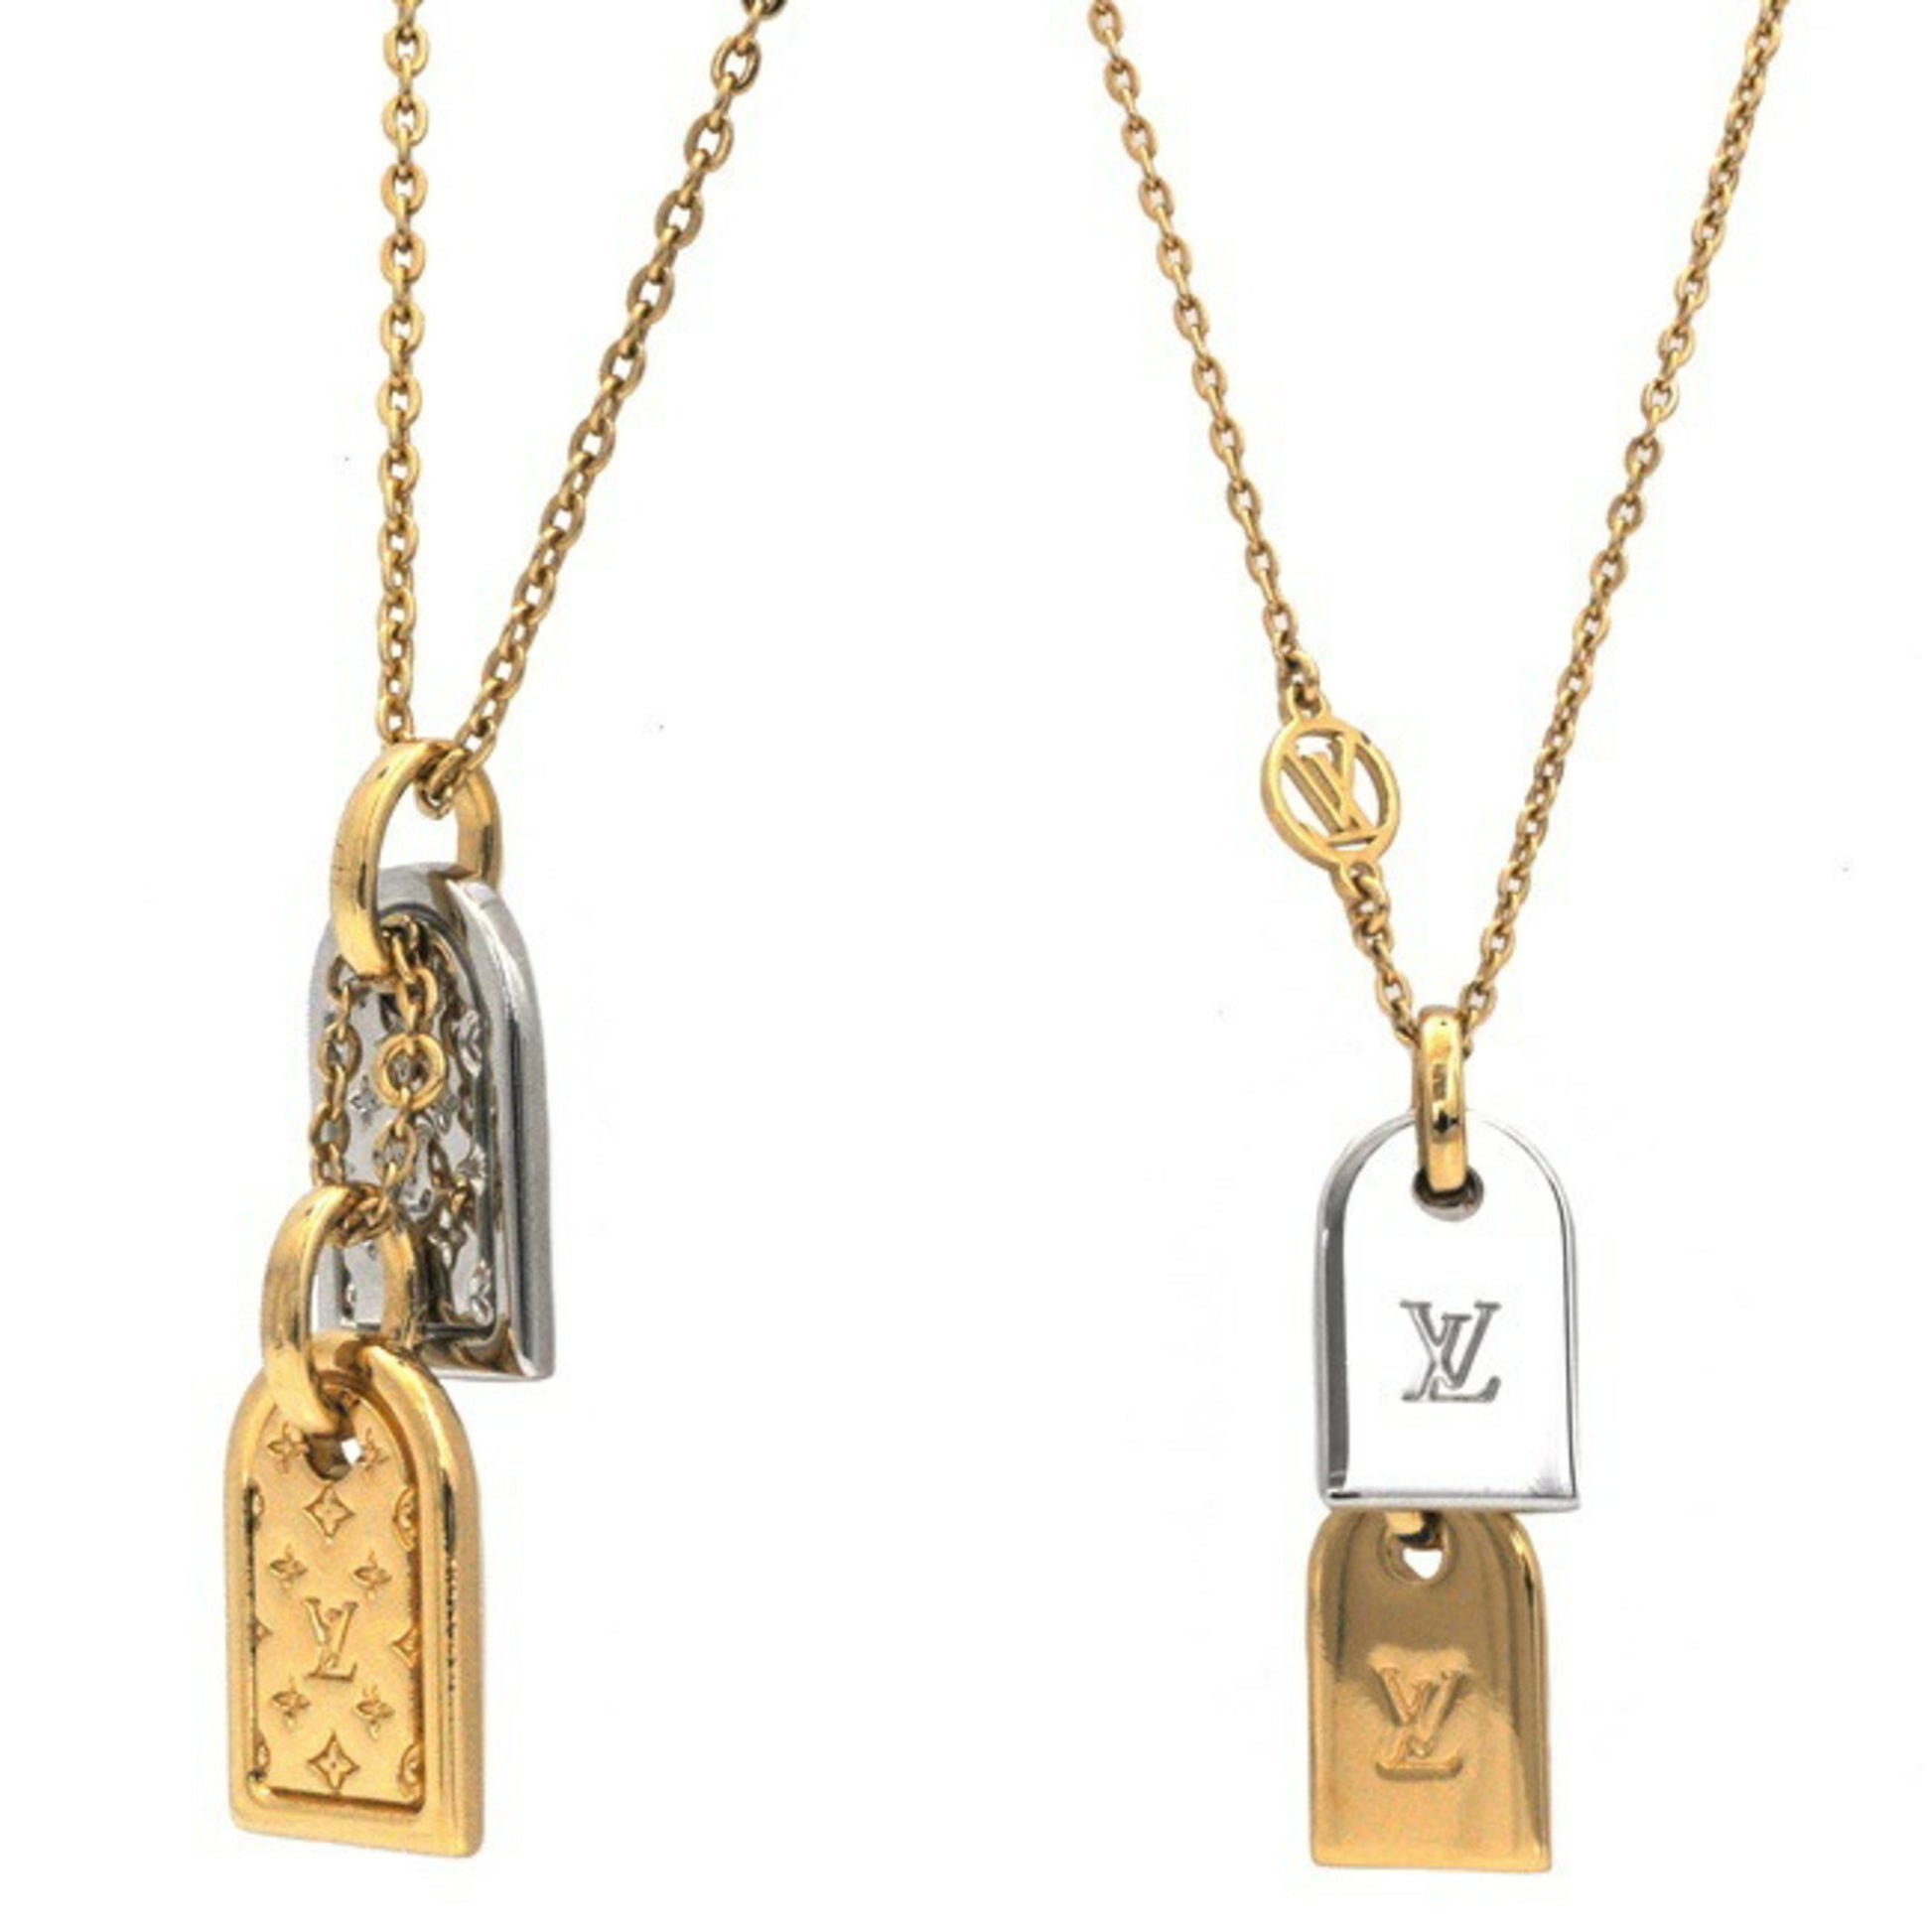 Shop Louis Vuitton Nanogram necklace (M63141) by mongsshop